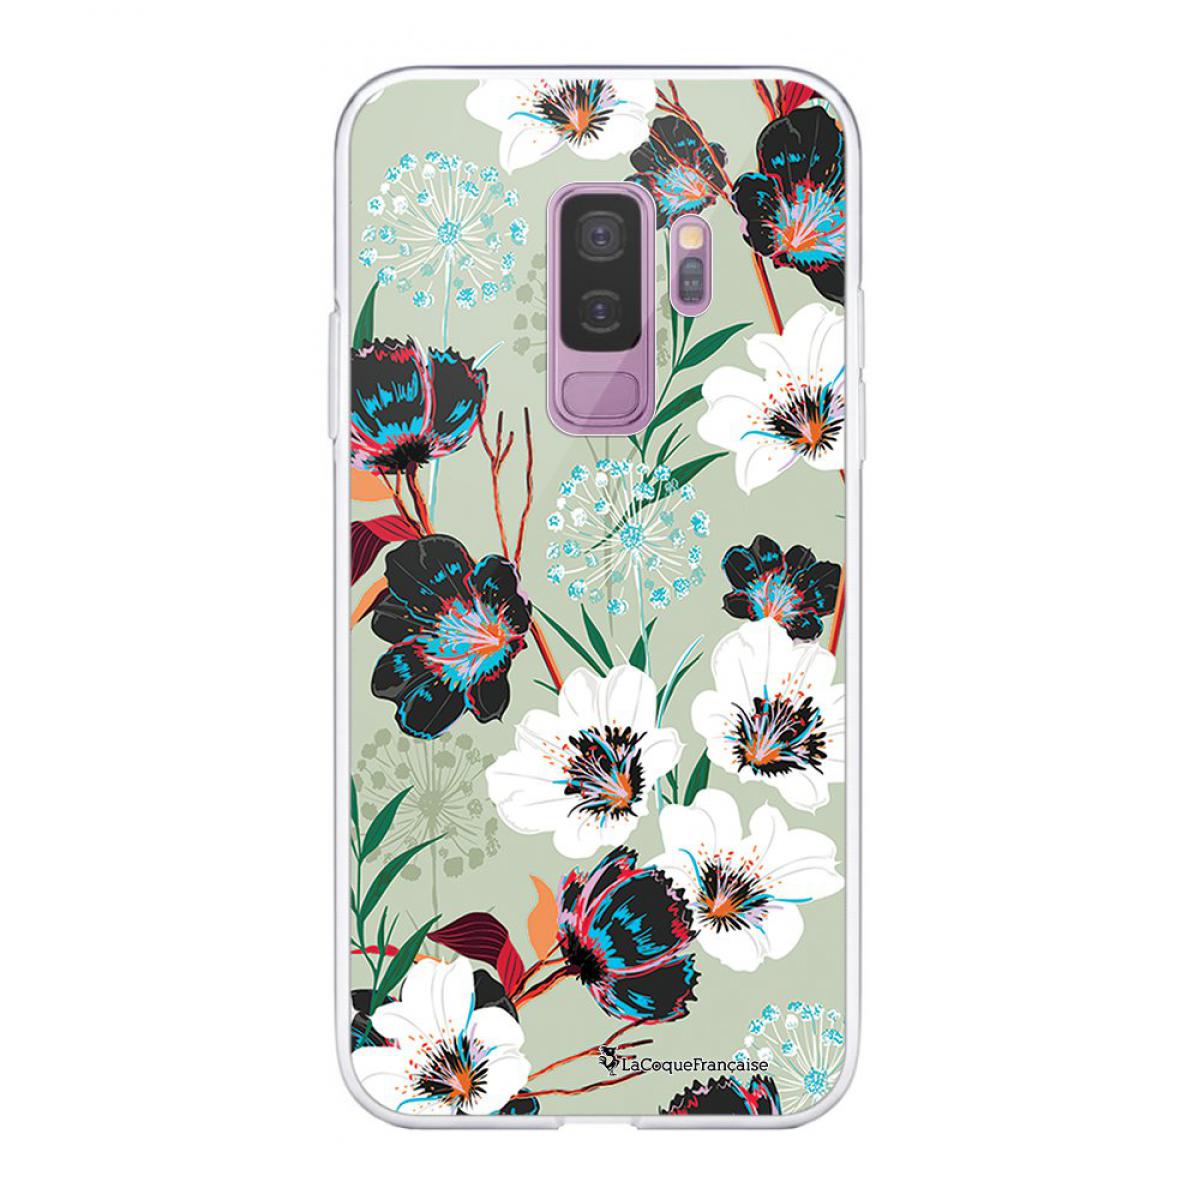 La Coque Francaise - Coque Samsung Galaxy S9 Plus 360 intégrale transparente Fleurs vert d'eau Tendance La Coque Francaise. - Coque, étui smartphone